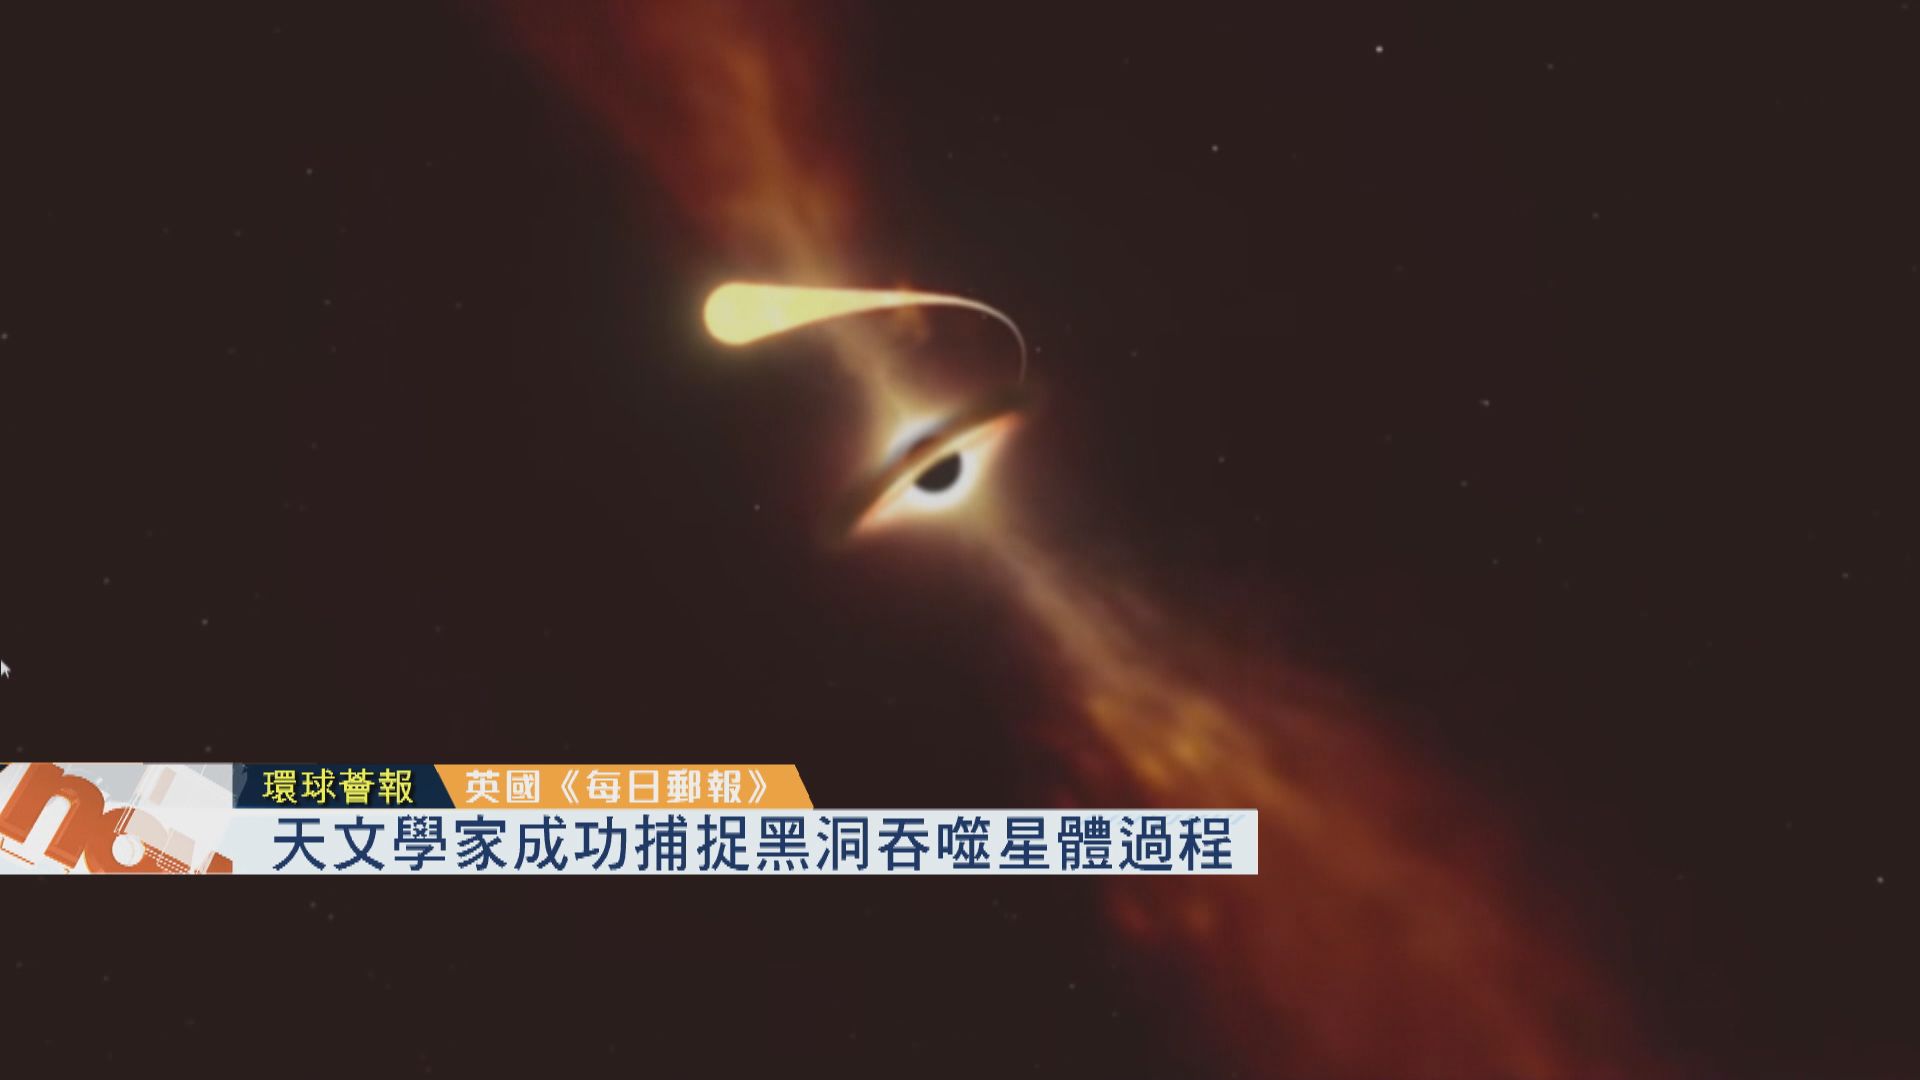 【環球薈報】天文學家成功捕捉黑洞吞噬星體過程